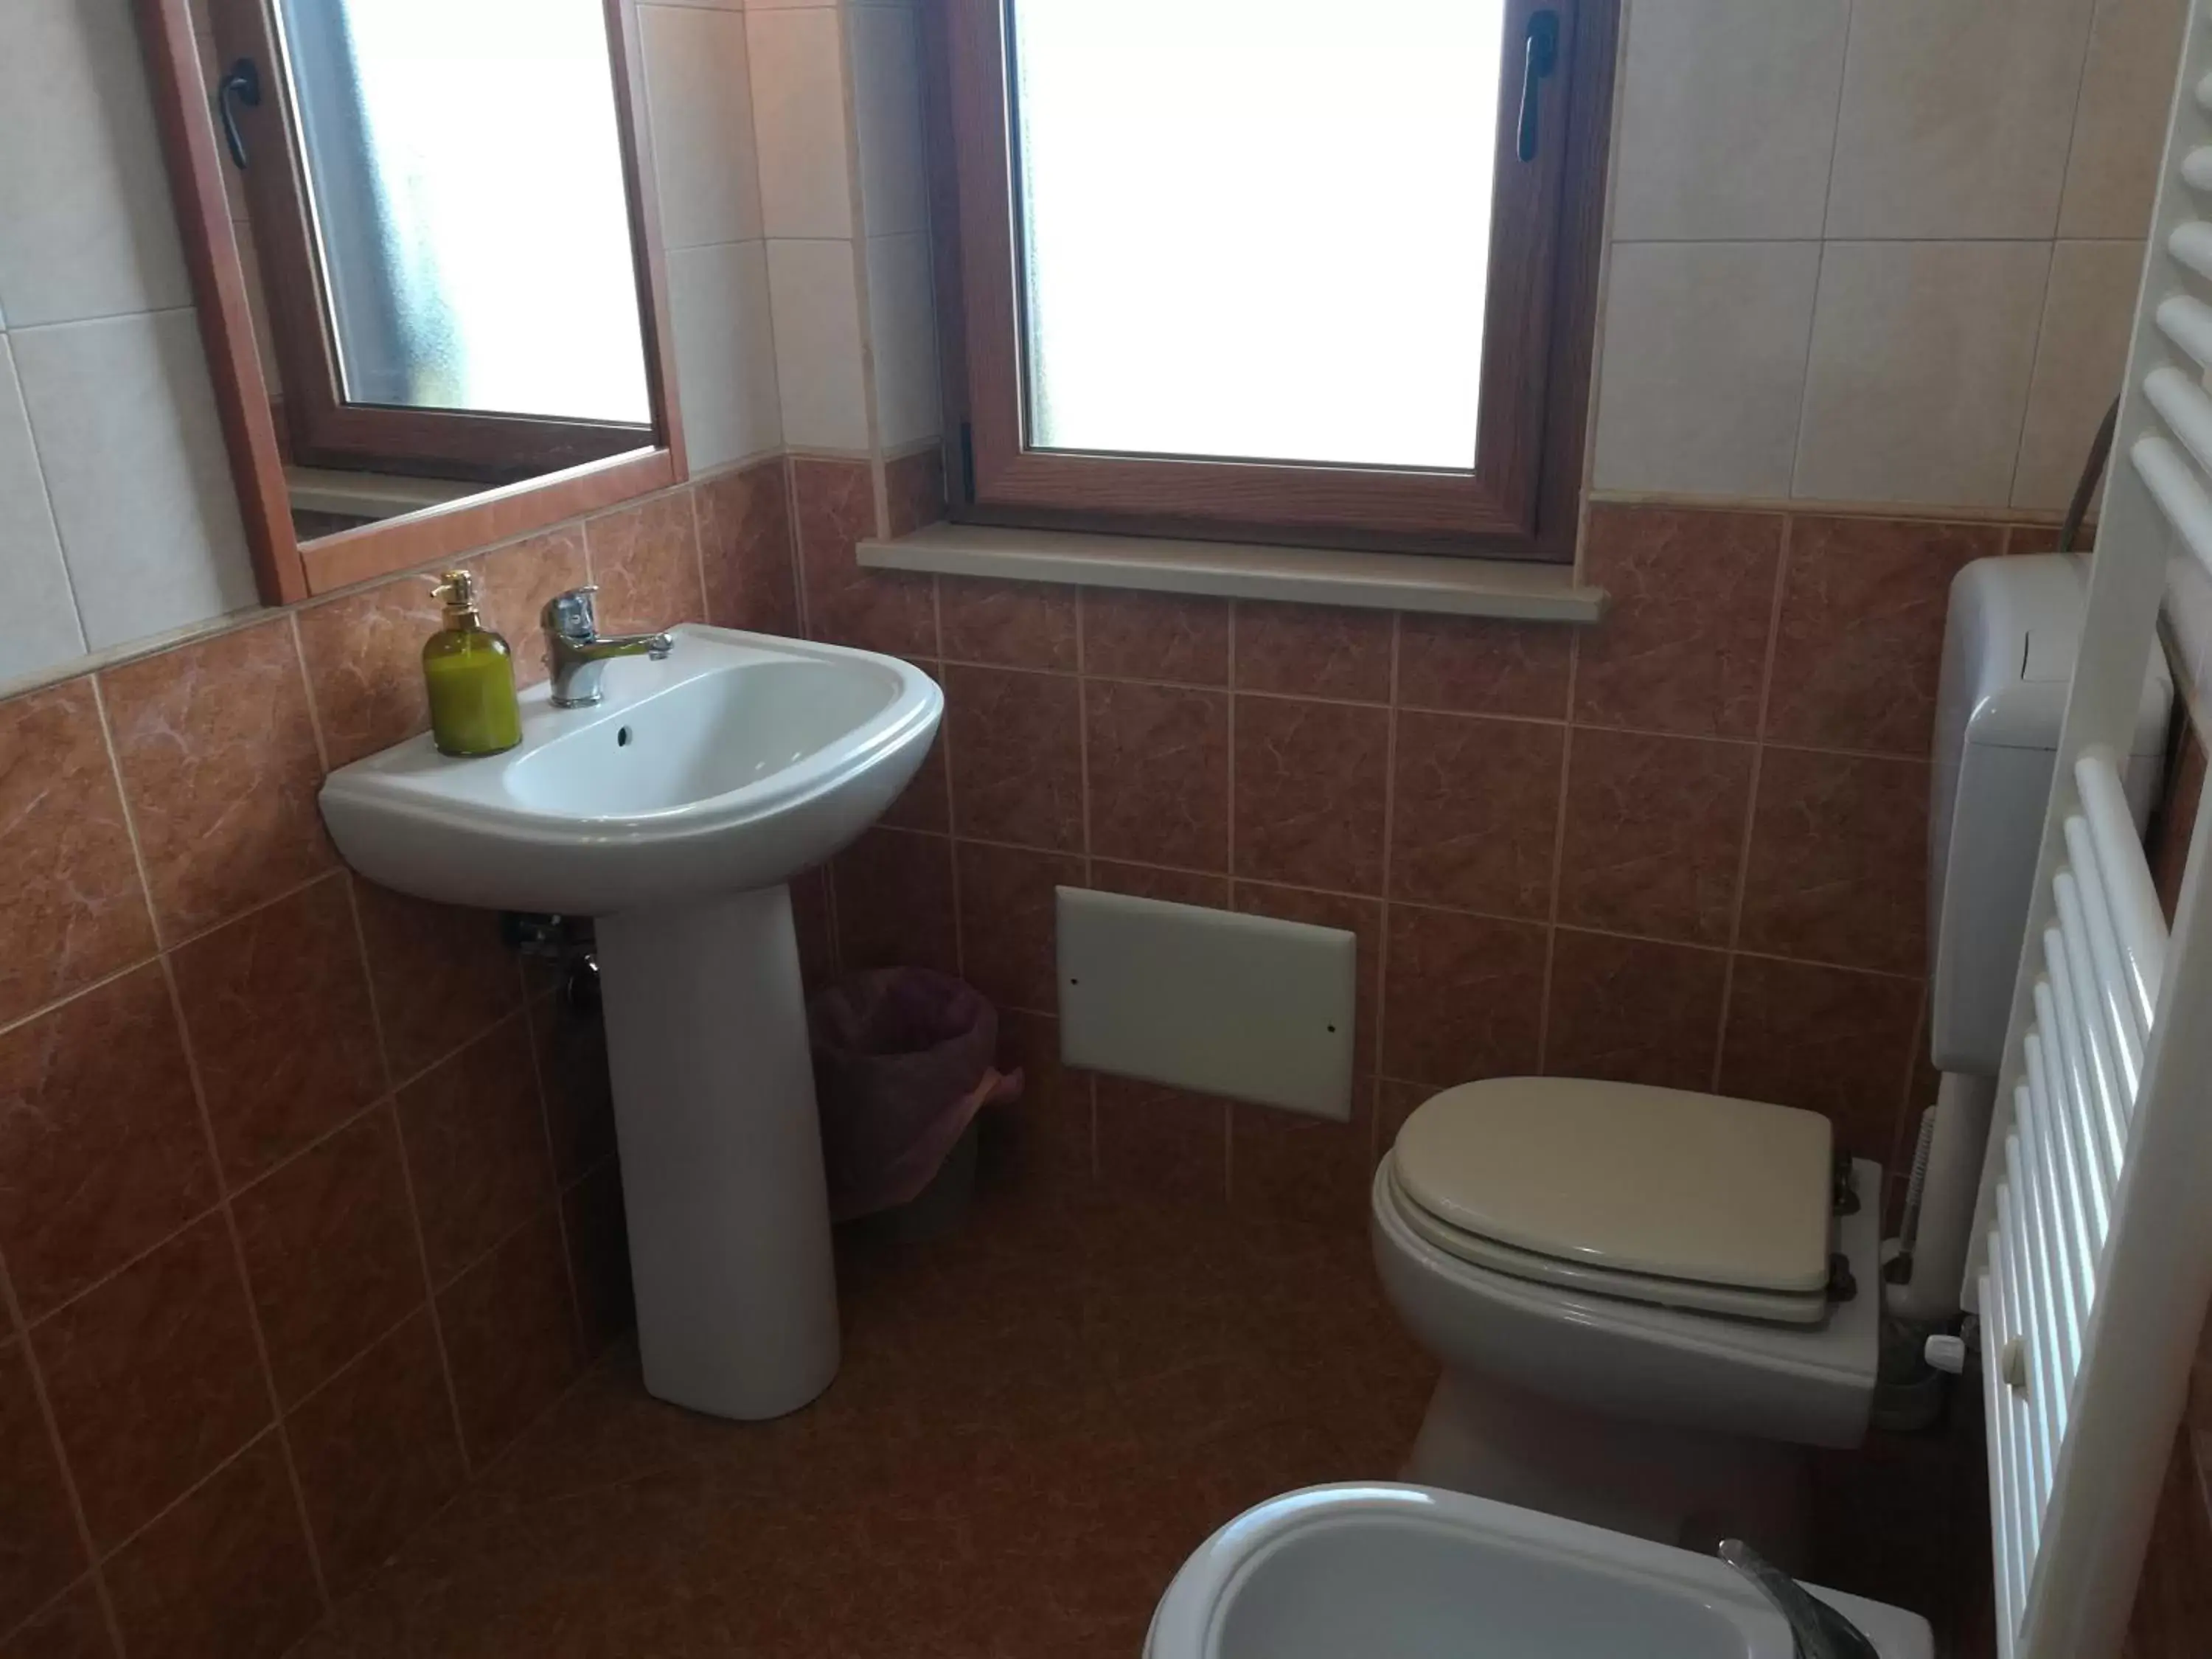 Bathroom in Scilla e Cariddi